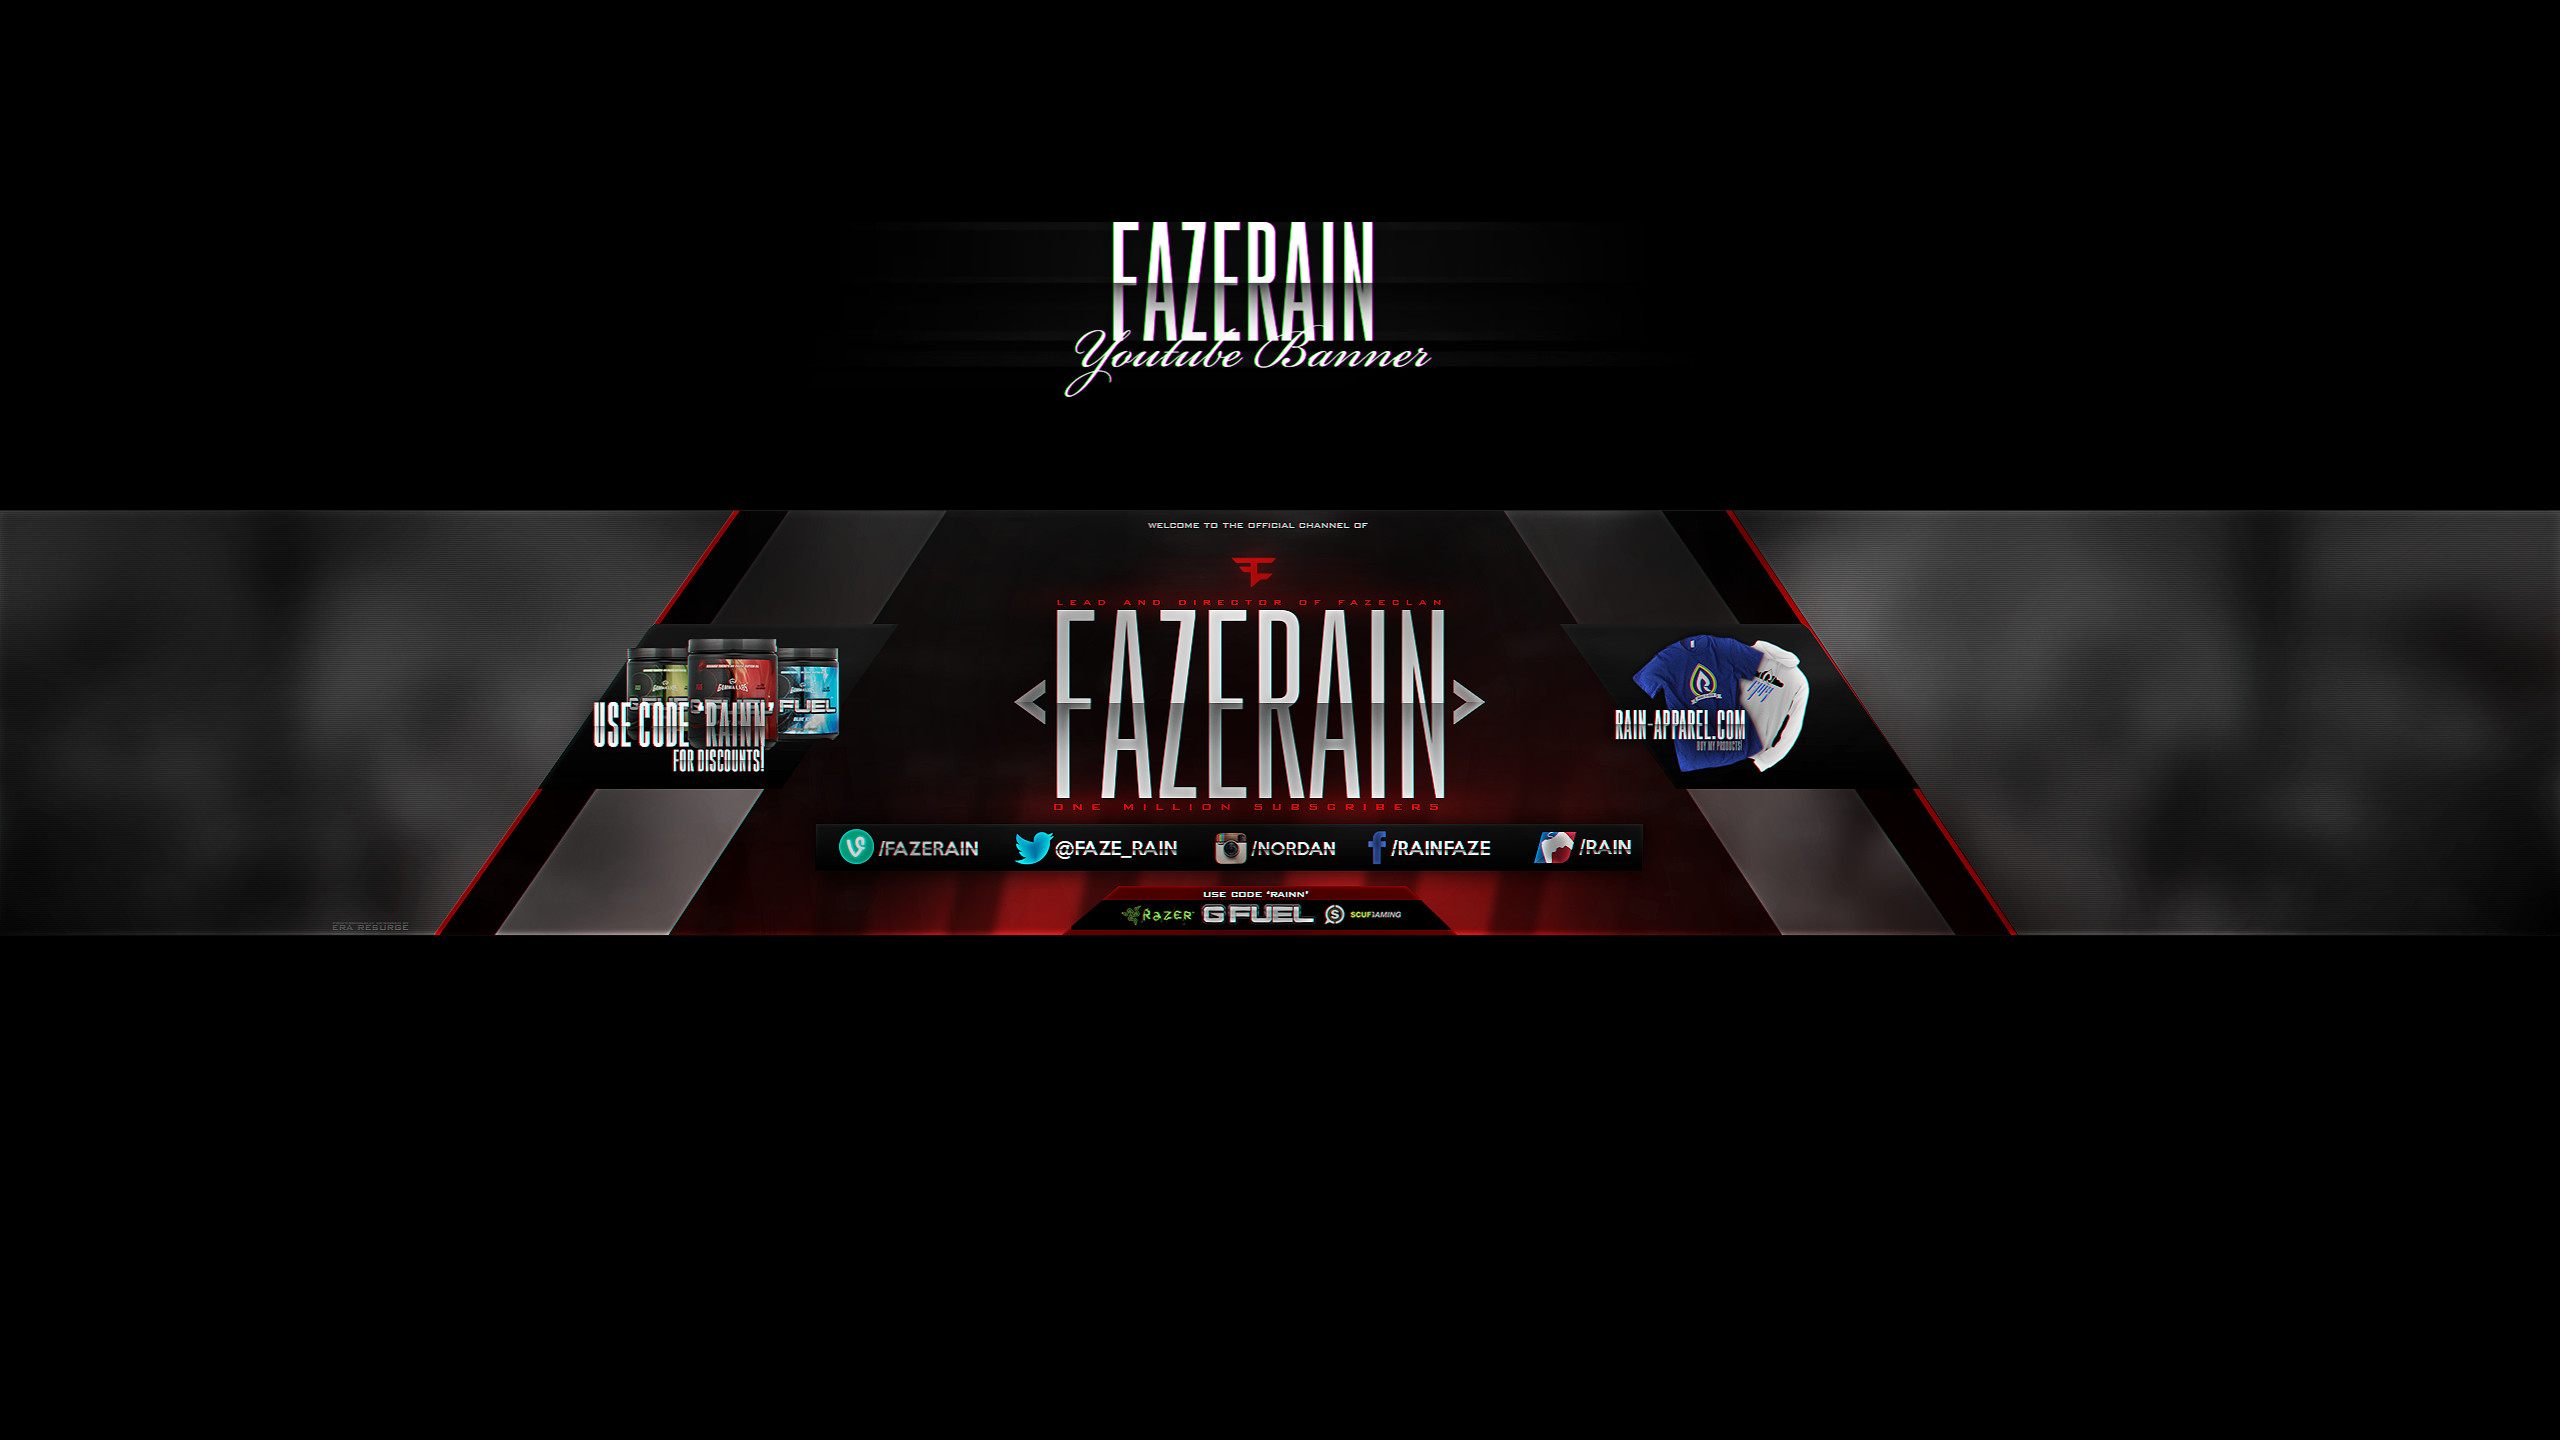 … FaZe Rain YouTube Banner @FaZe_Rain by ResurgeART